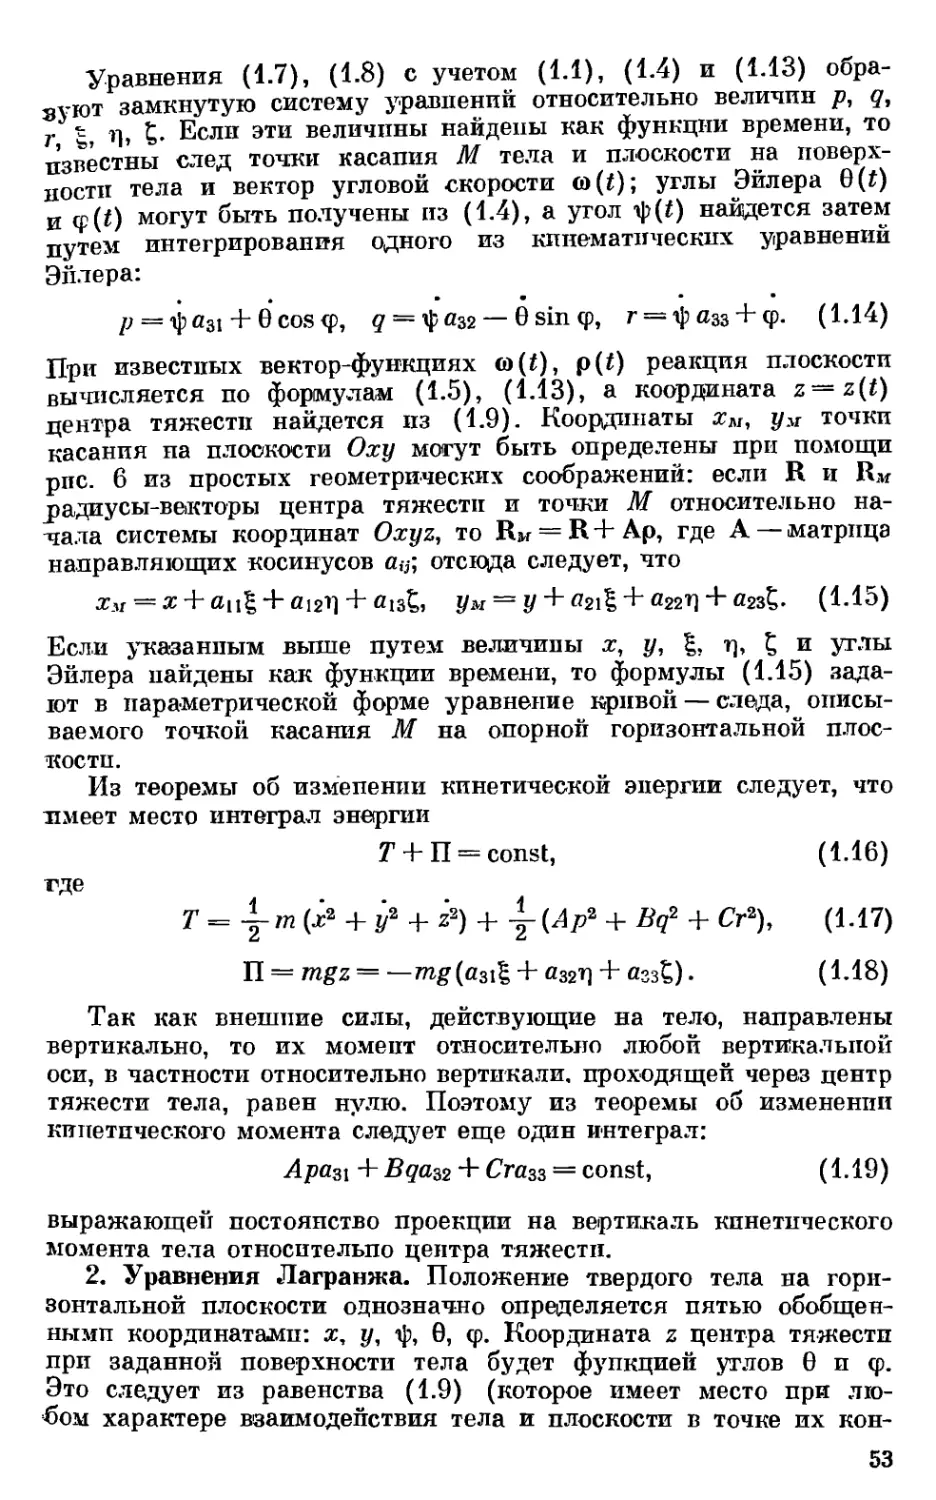 2. Уравнения Лагранжа